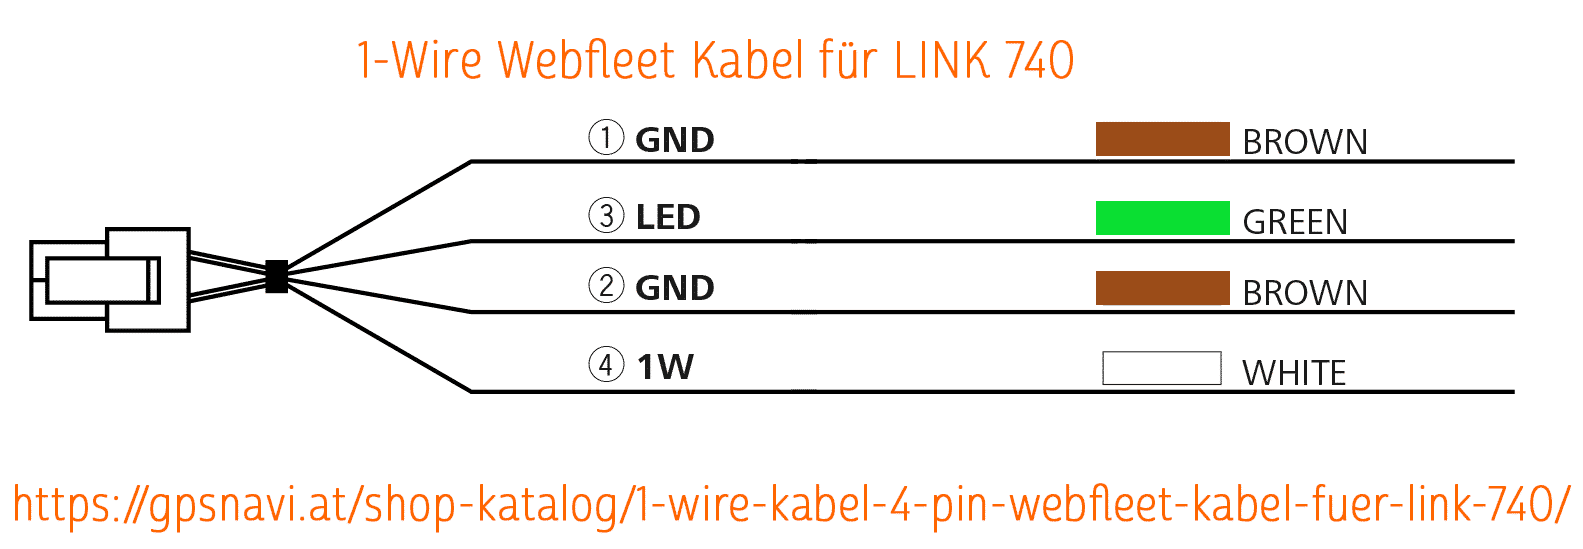 1-Wire Kabel - 4-PIN Webfleet Kabel für LINK 740 #9KX0.001.04